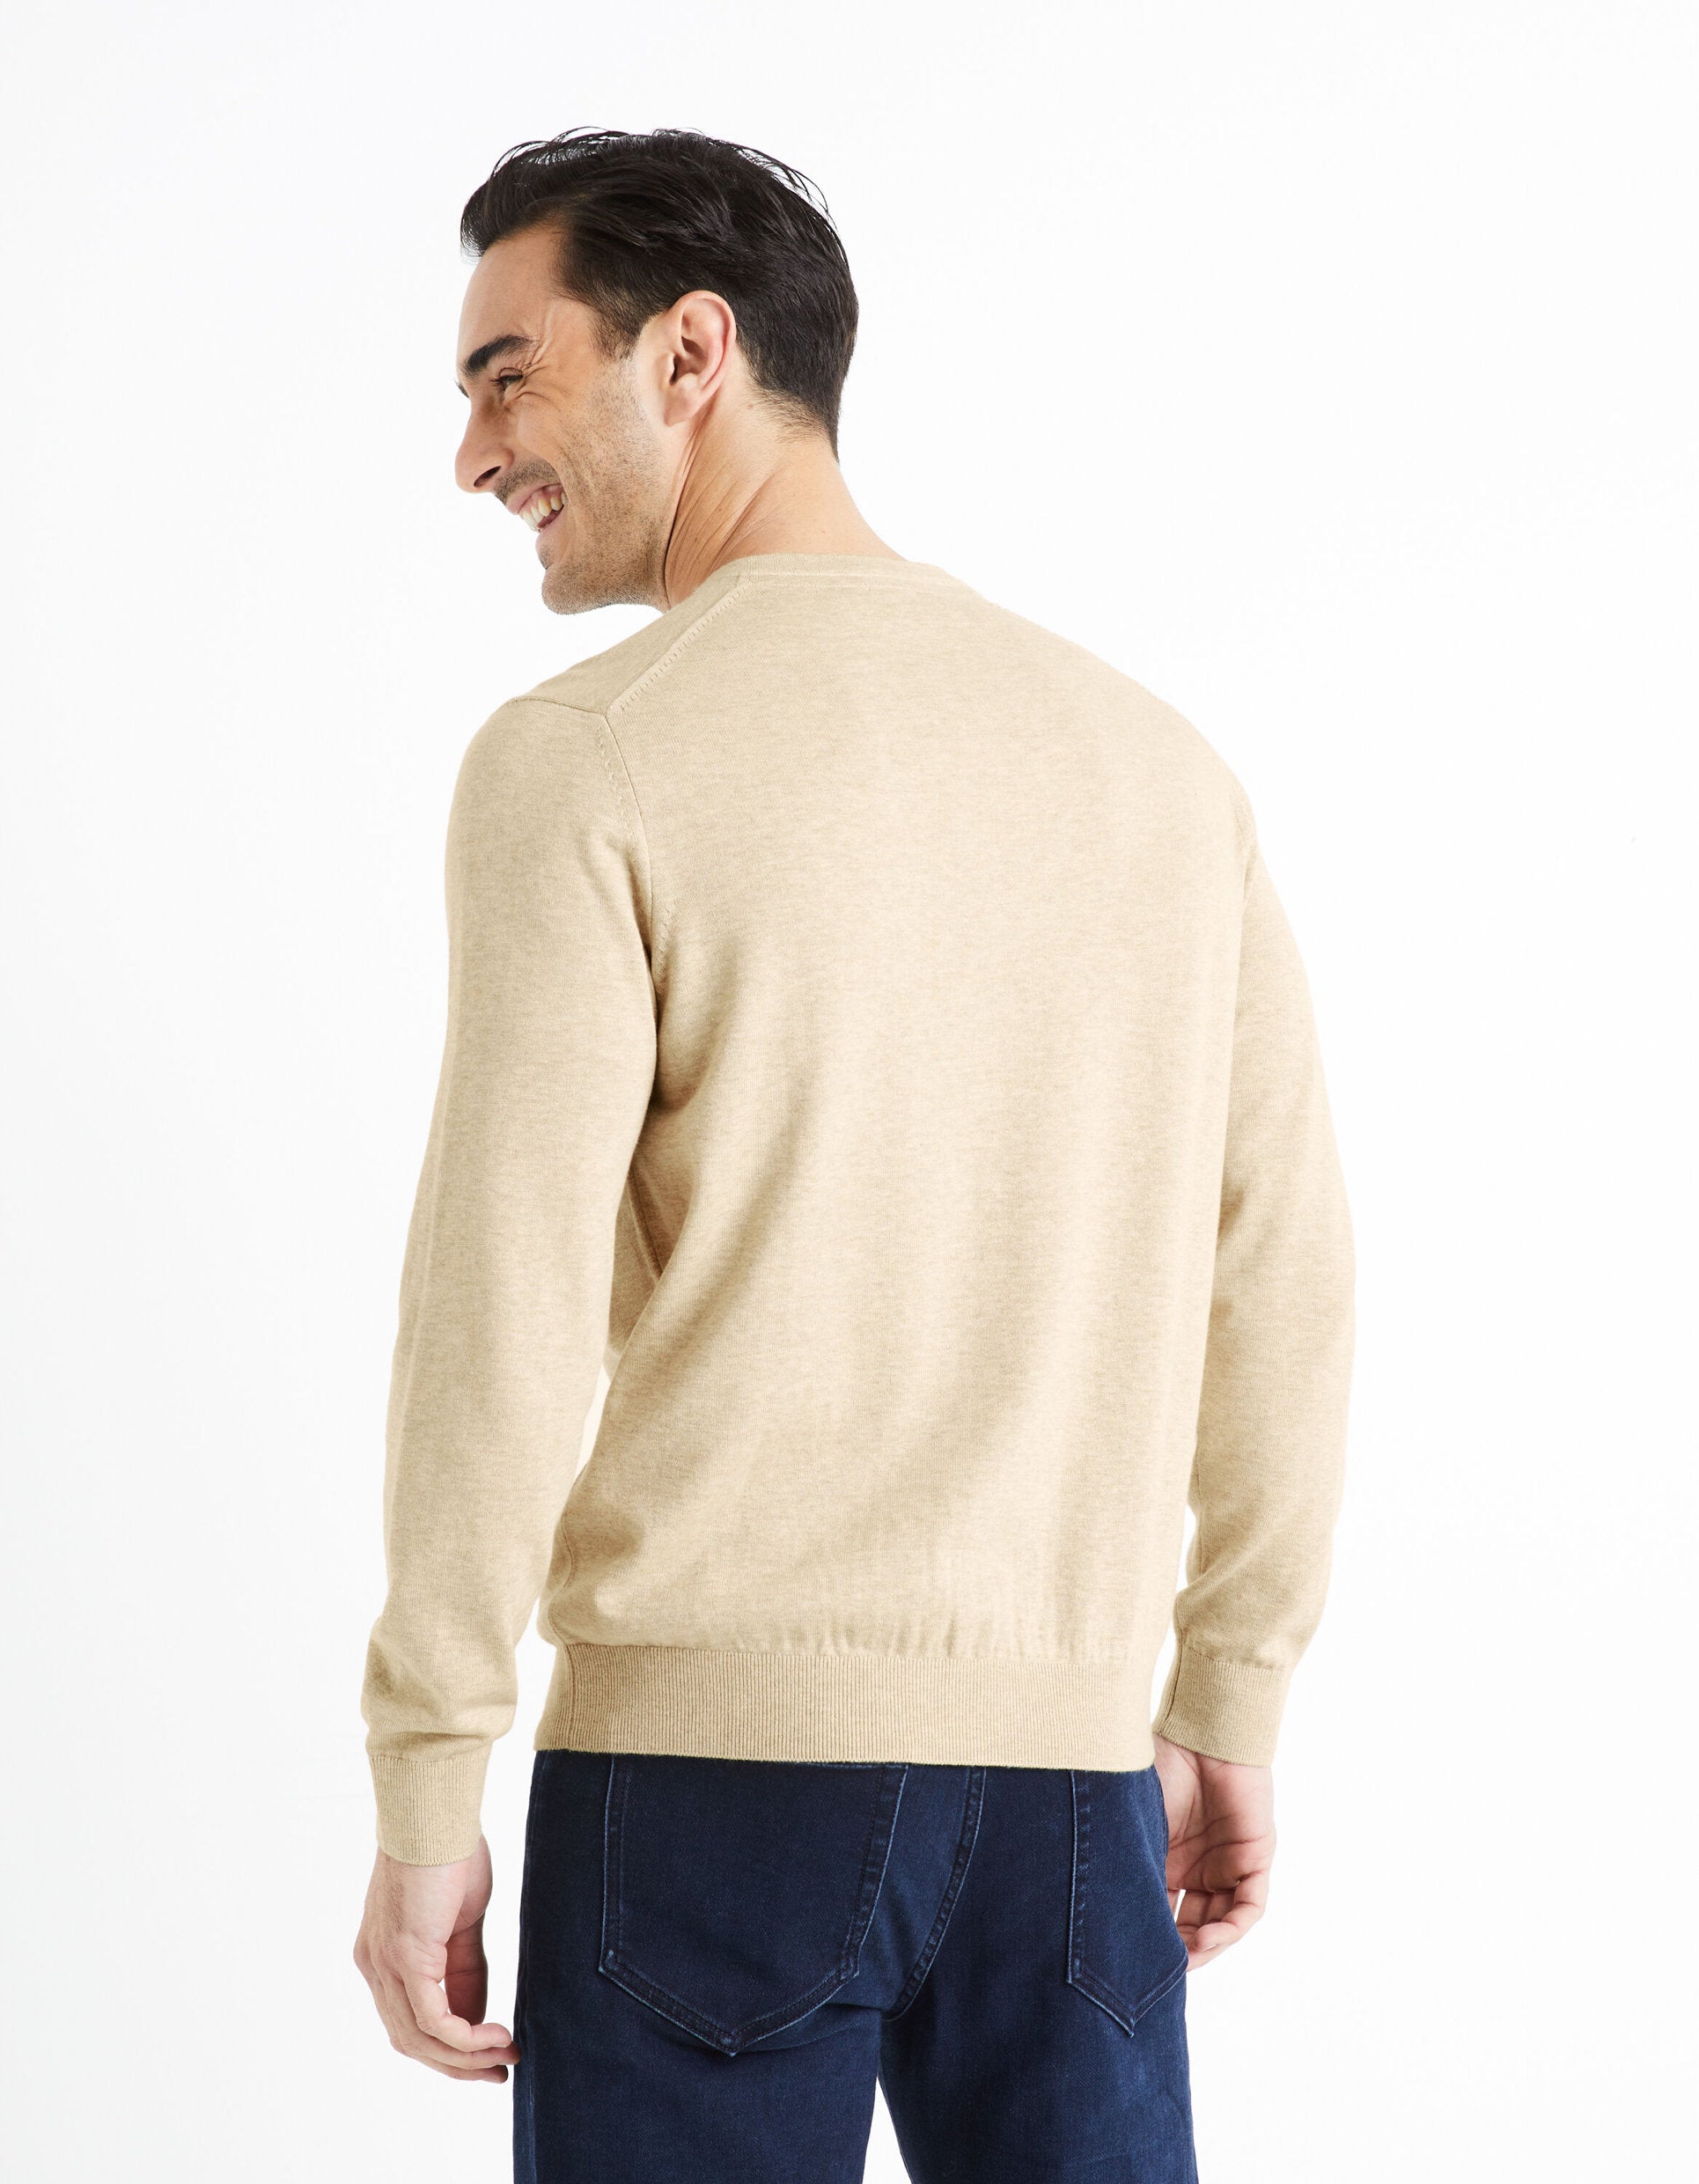 100% Cotton V-Neck Sweater - Beige_DECOTON_BEIGE MEL_04